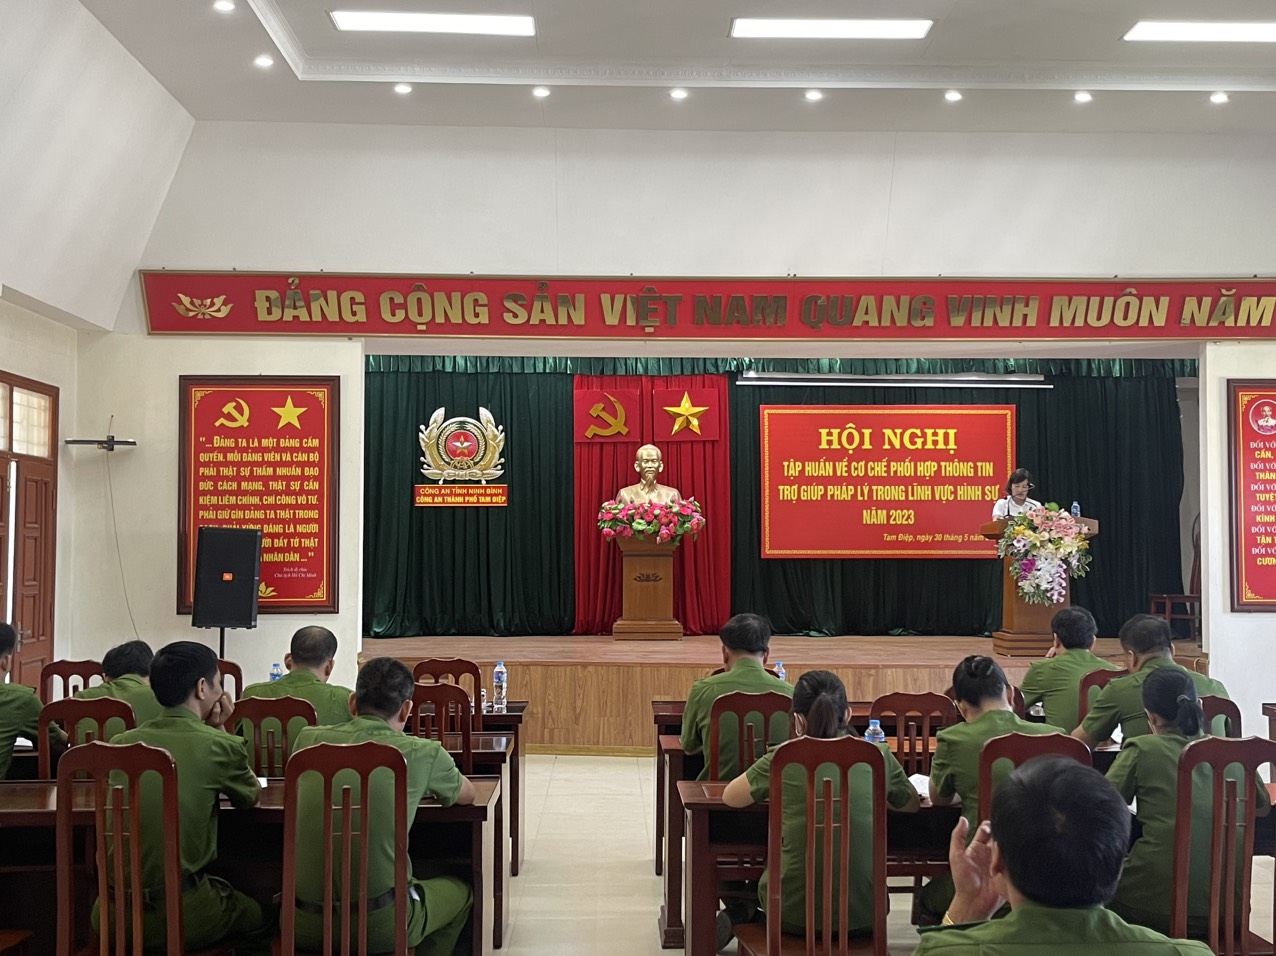 Hội nghị tập huấn về cơ chế phối hợp thông tin trợ giúp pháp lý trong lĩnh vực hình sự trên địa bàn huyện Yên Khánh và thành phố Tam Điệp